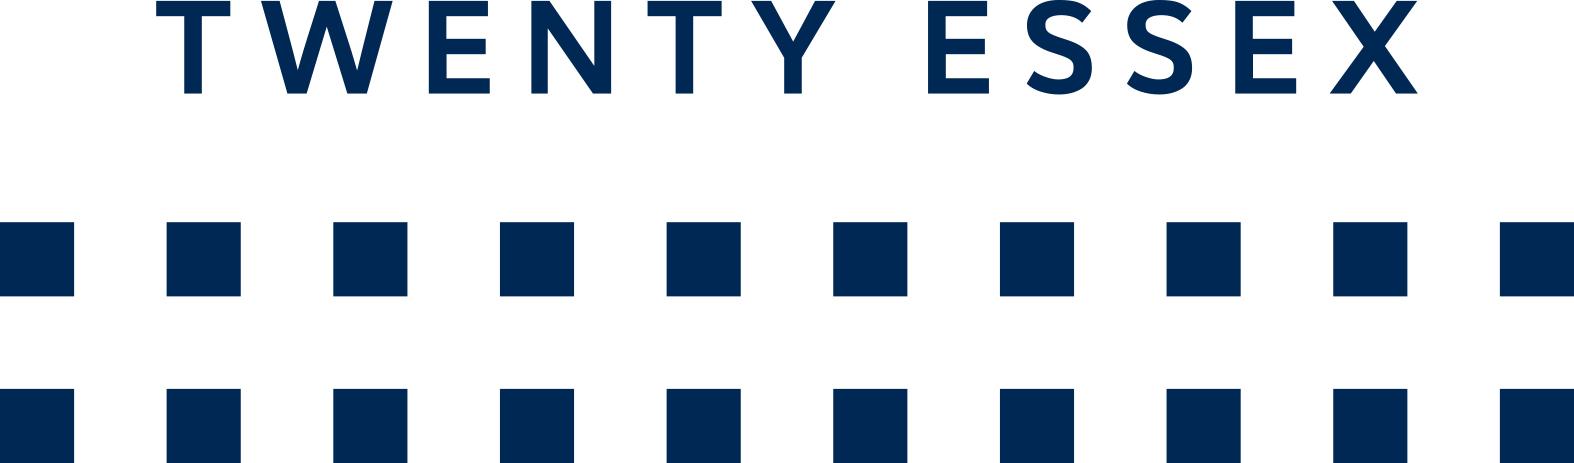 Twenty Essex logo